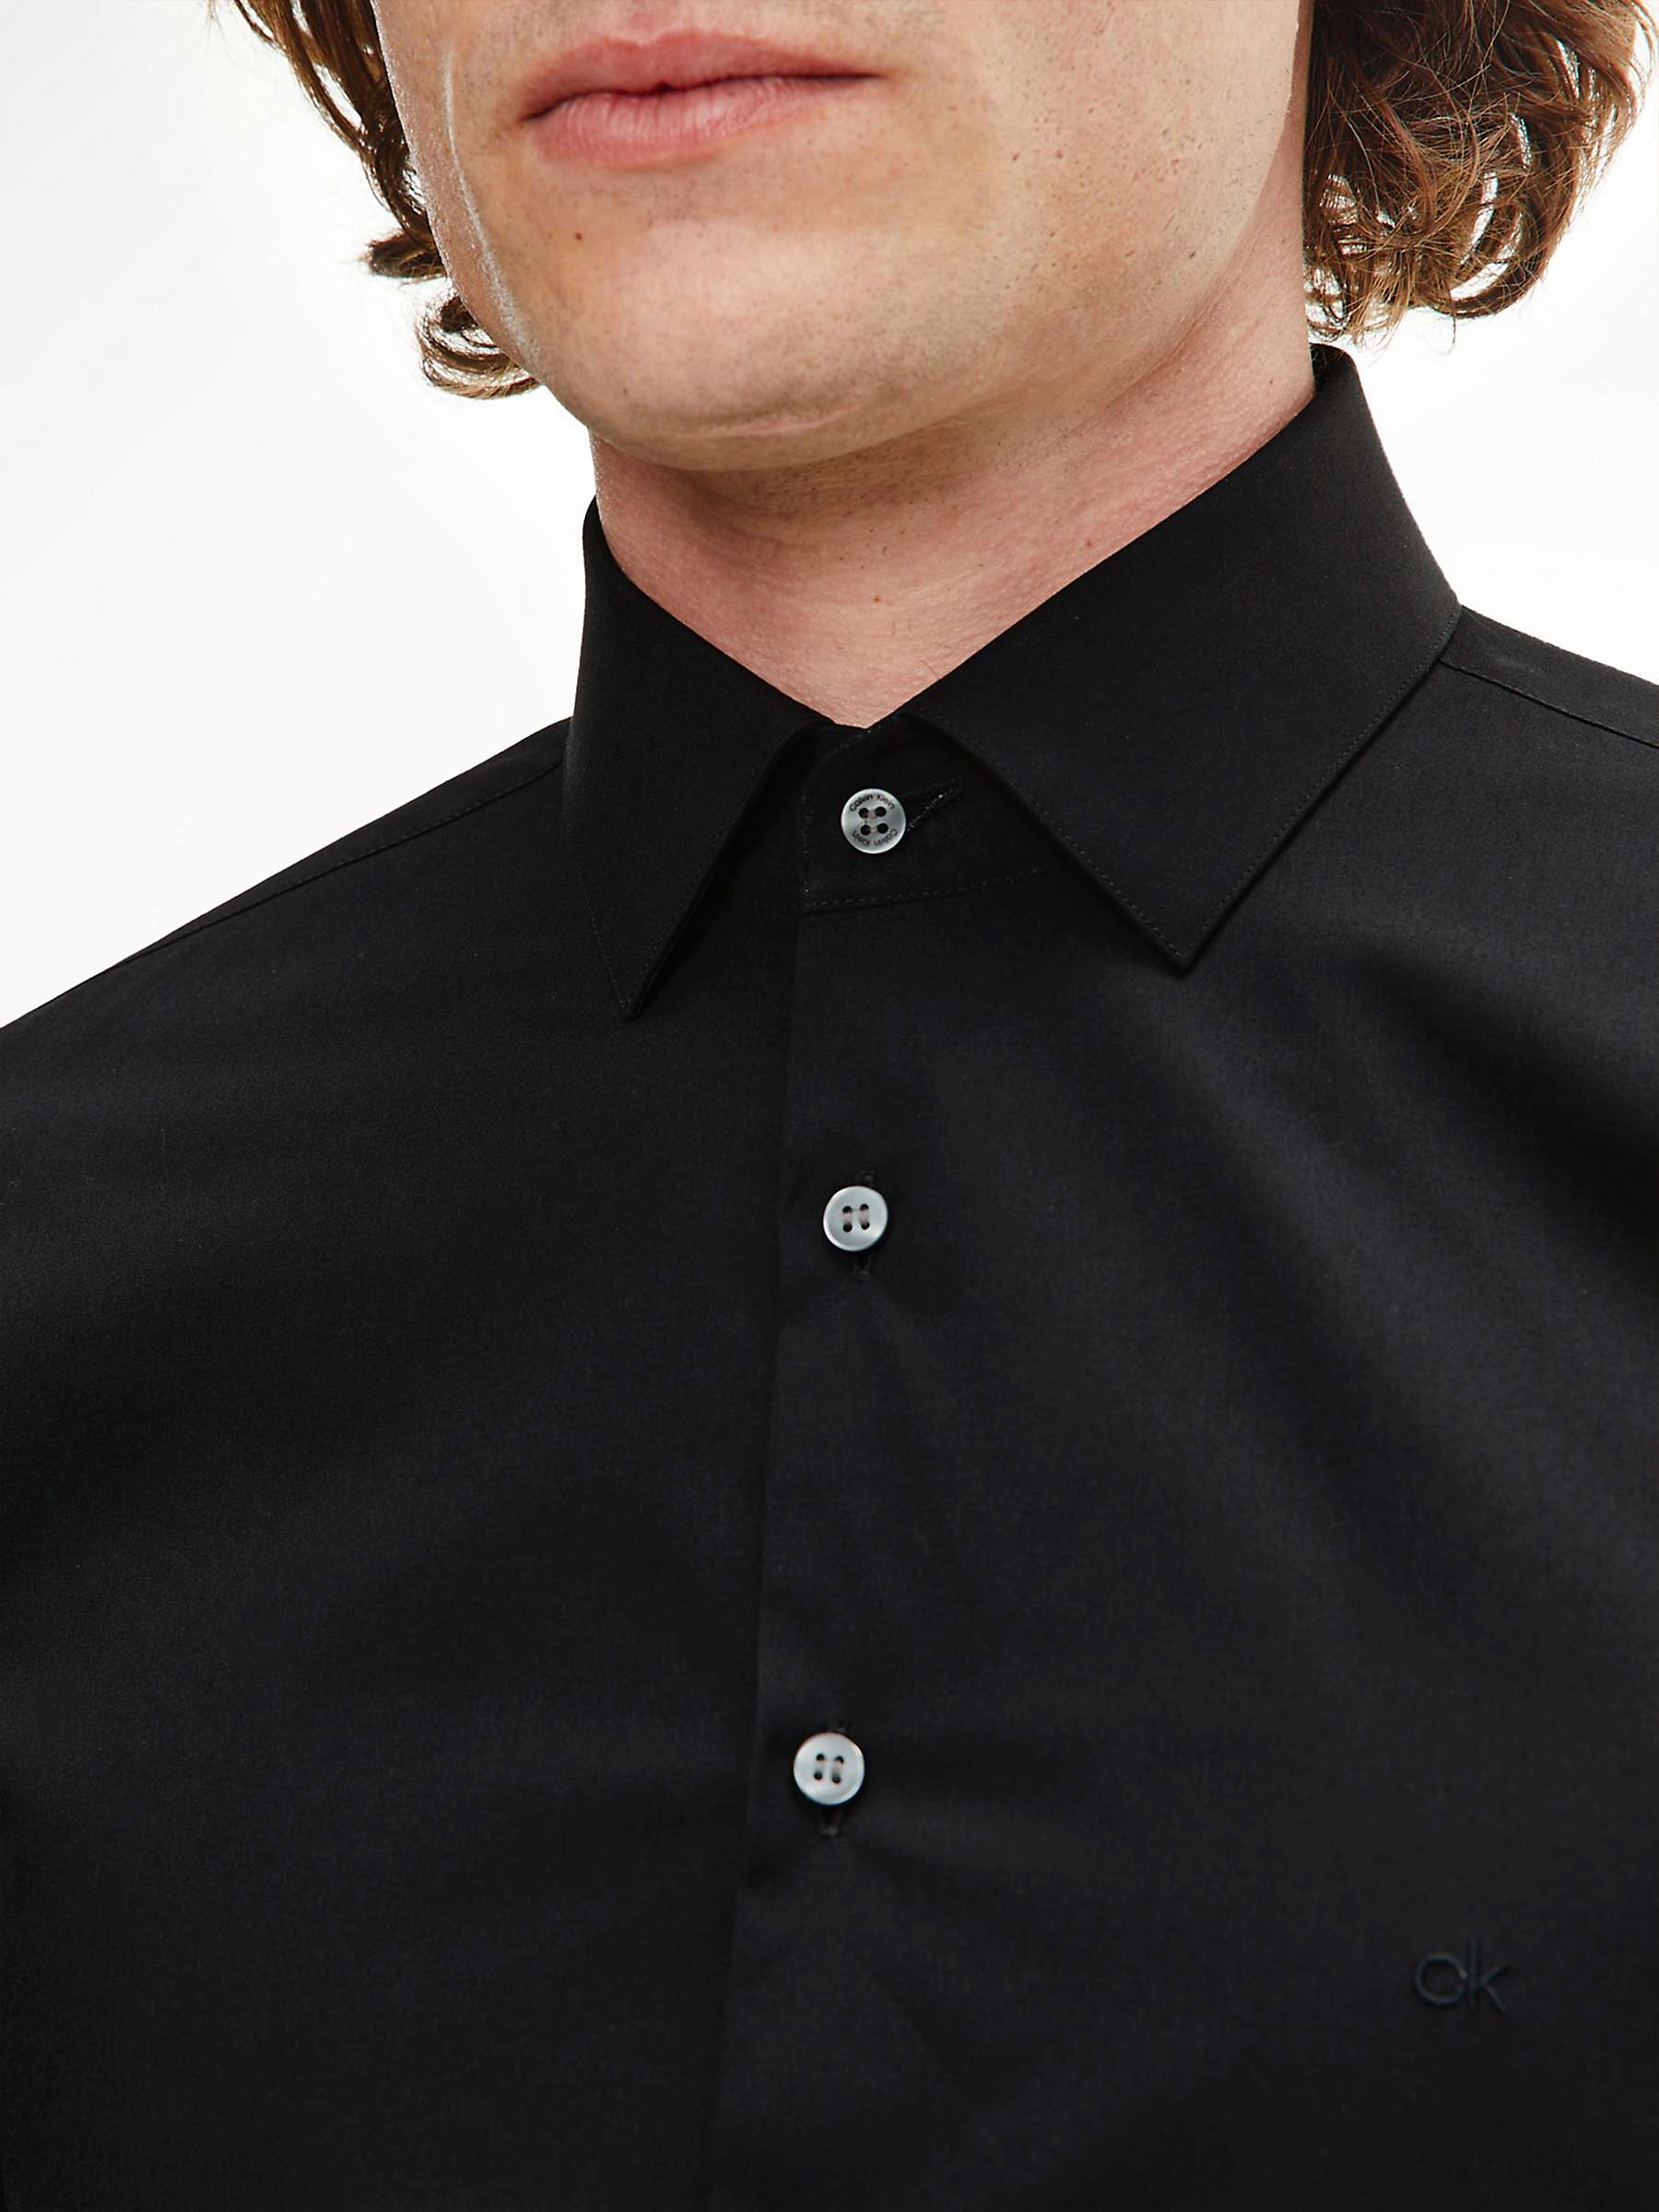 Buy Calvin Klein Cotton Poplin Slim Fit Shirt Online at johnlewis.com